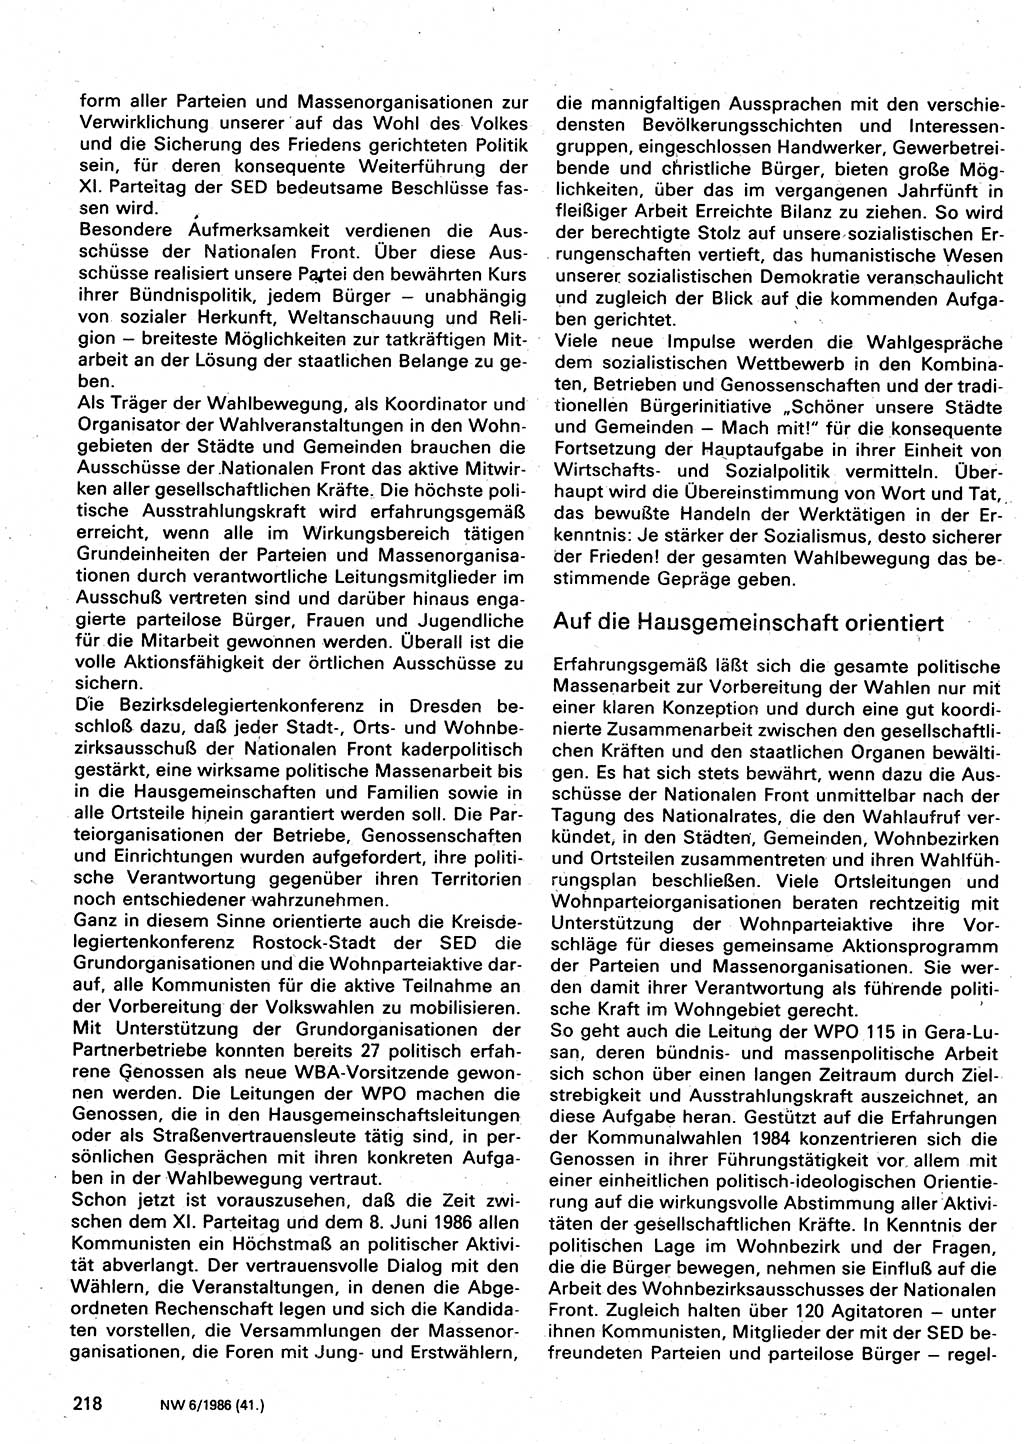 Neuer Weg (NW), Organ des Zentralkomitees (ZK) der SED (Sozialistische Einheitspartei Deutschlands) für Fragen des Parteilebens, 41. Jahrgang [Deutsche Demokratische Republik (DDR)] 1986, Seite 218 (NW ZK SED DDR 1986, S. 218)